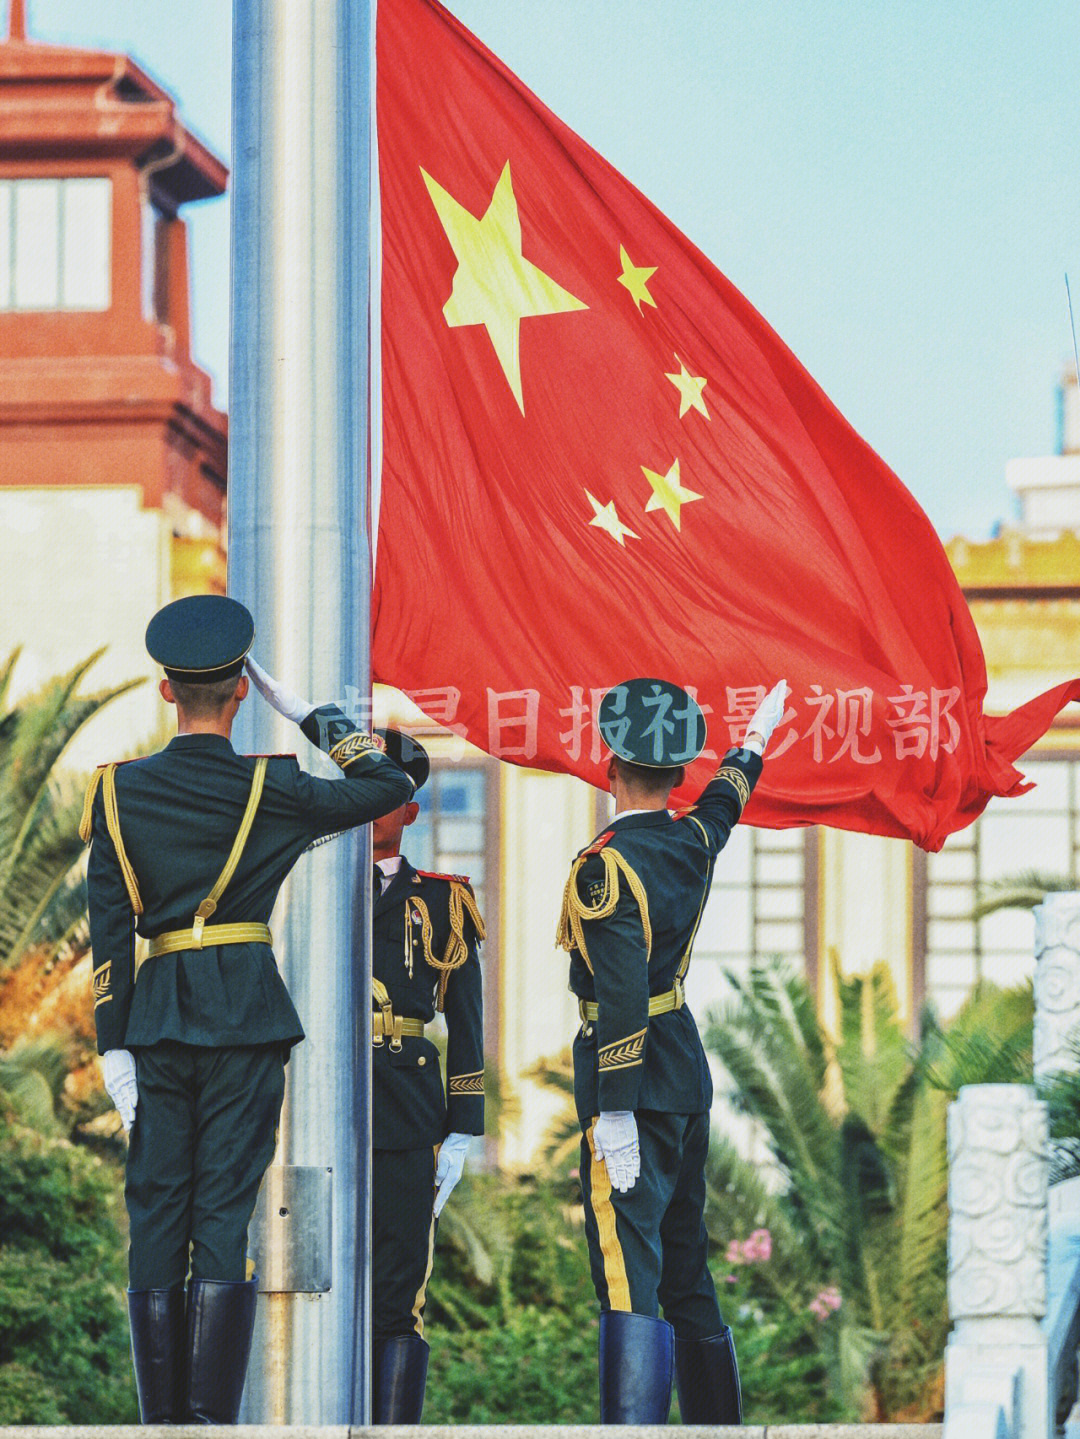 唐朝国旗 飘扬图片